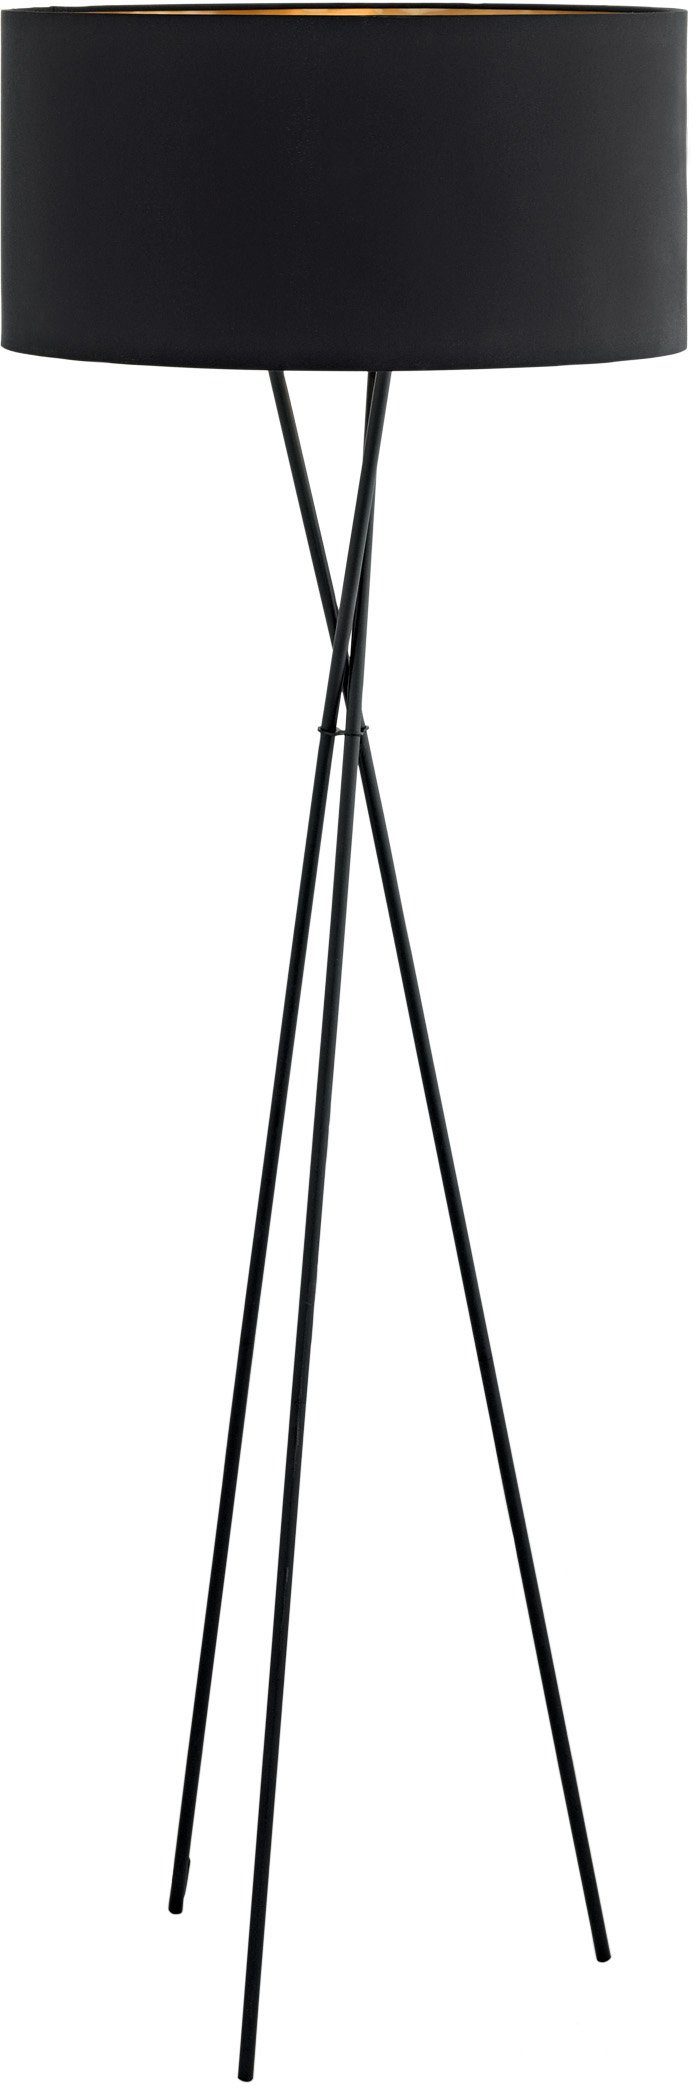 EGLO Stehlampe FONDACHELLI, ohne Leuchtmittel, weiß nickel / Ø51 x H151,5 cm / Hochwertige Stehlampe schwarz/kupferfarben